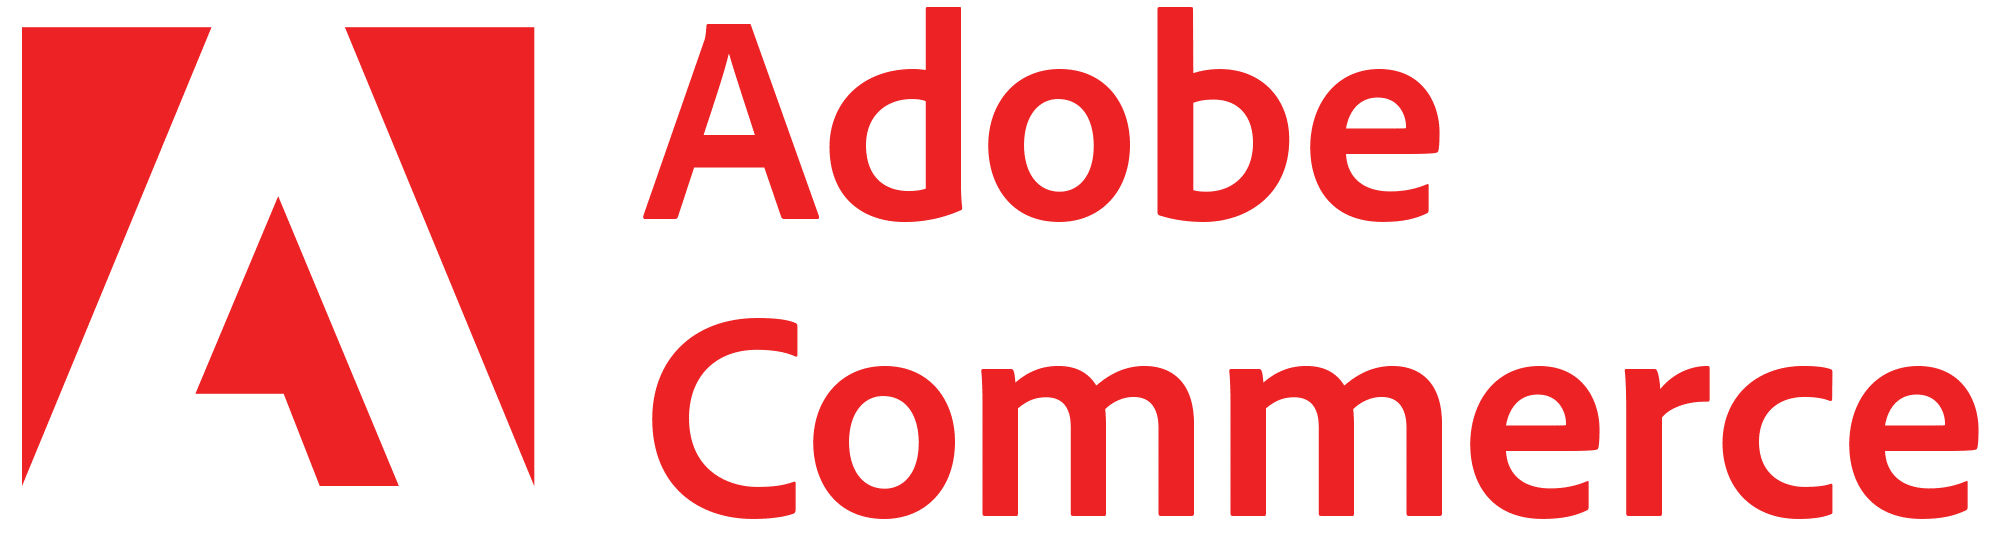 Magento Adobe Commerce